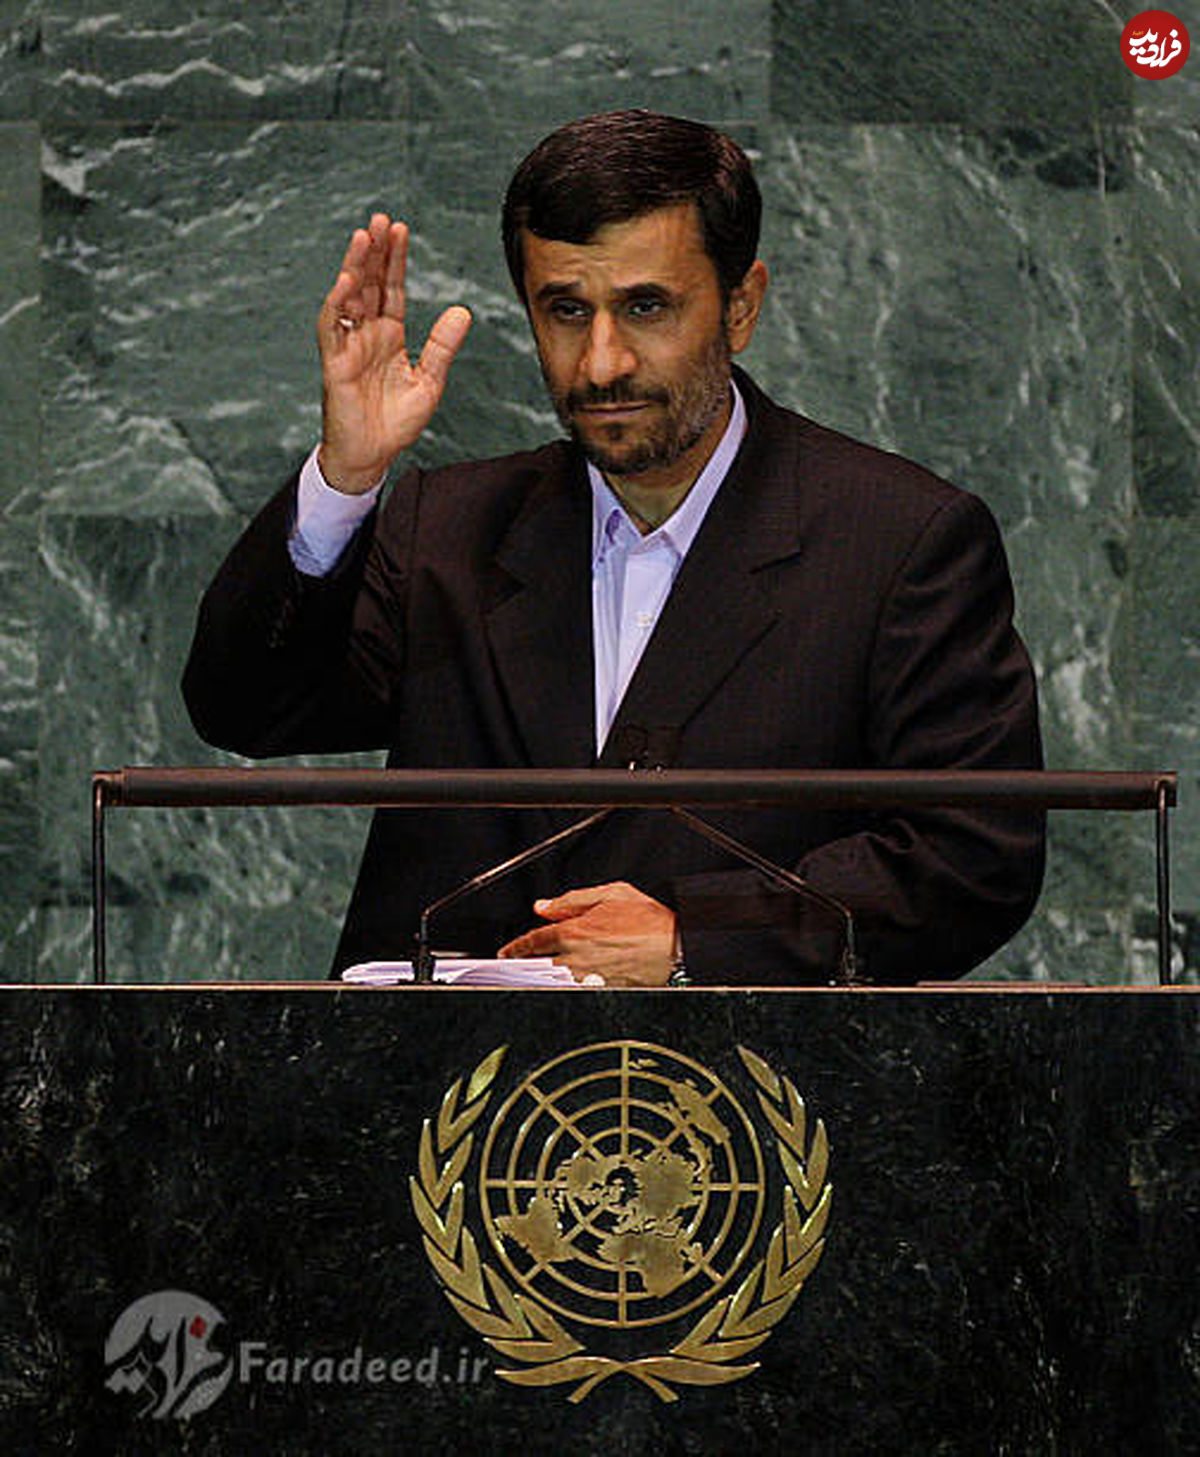 تصاویر کمیاب از سخنرانی احمدی نژاد در سازمان ملل